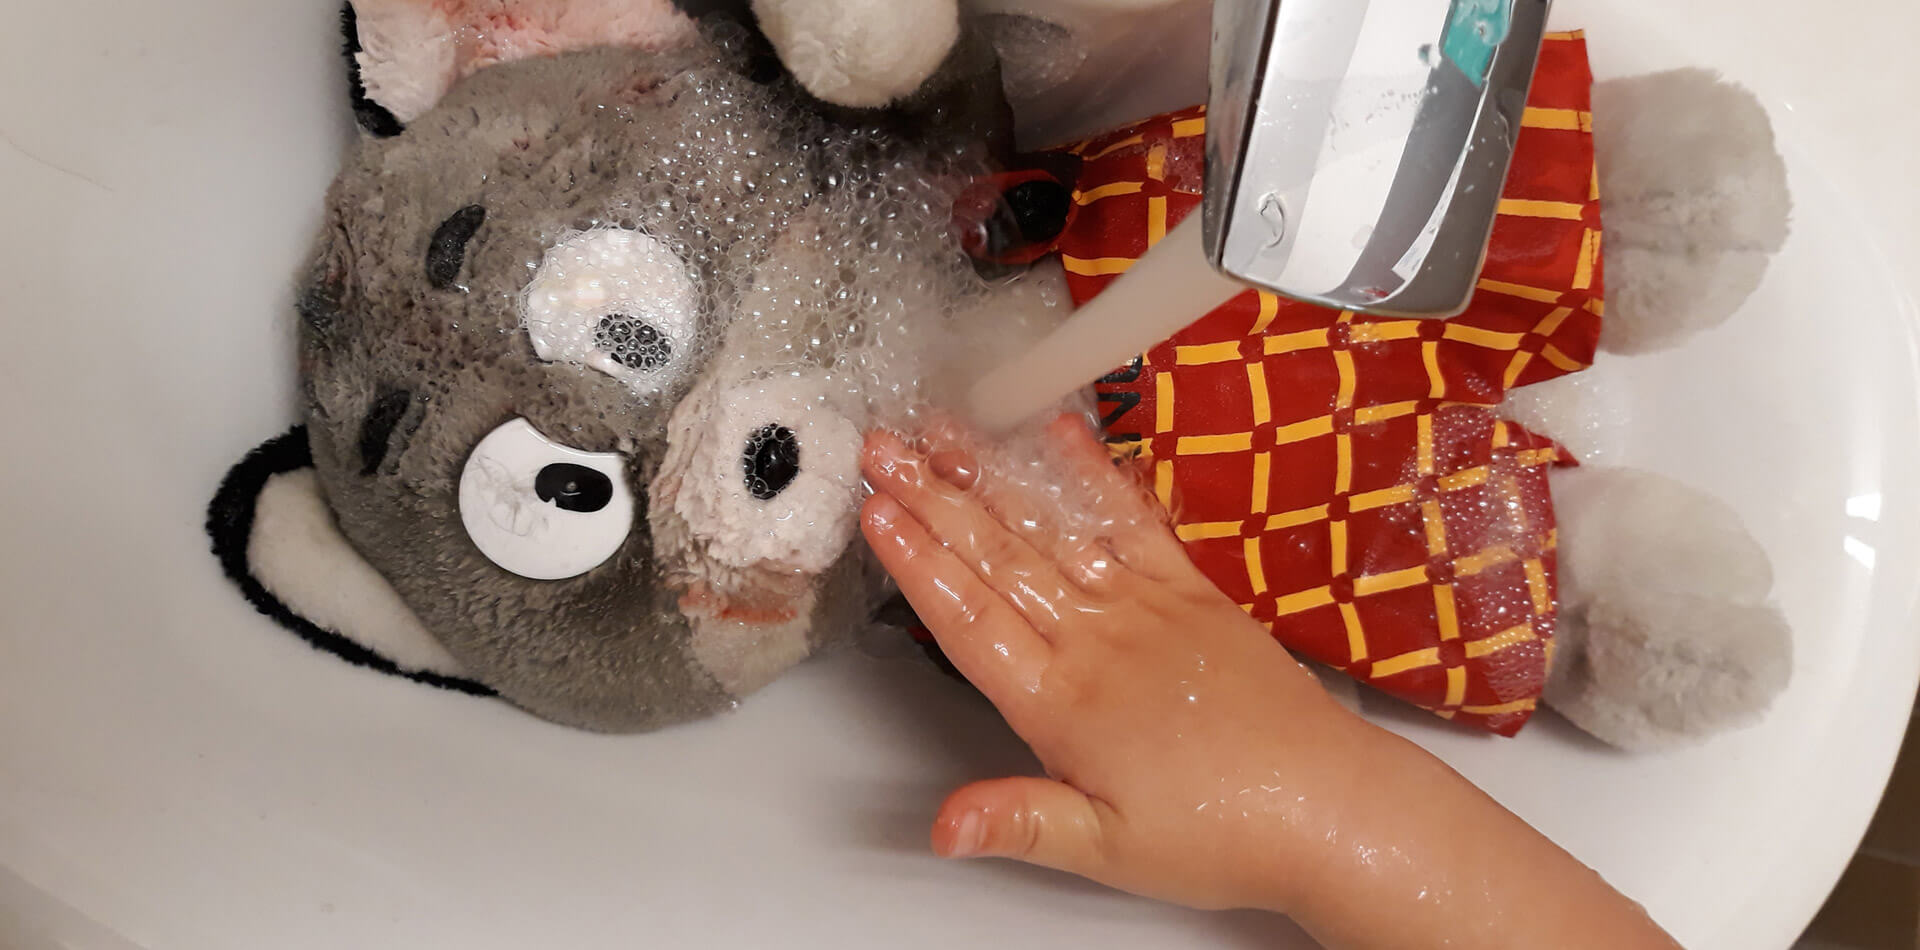 Kuvassa on käsienpesuallas, jossa makaa Manu-pehmolelu veden valuessa hanasta lelun päälle. Lapsen käsi pesee Manua, joka on selkeästi saanut punaista maalia kuonoon ja korvaan. Kuva: päiväkoti Ebeneser